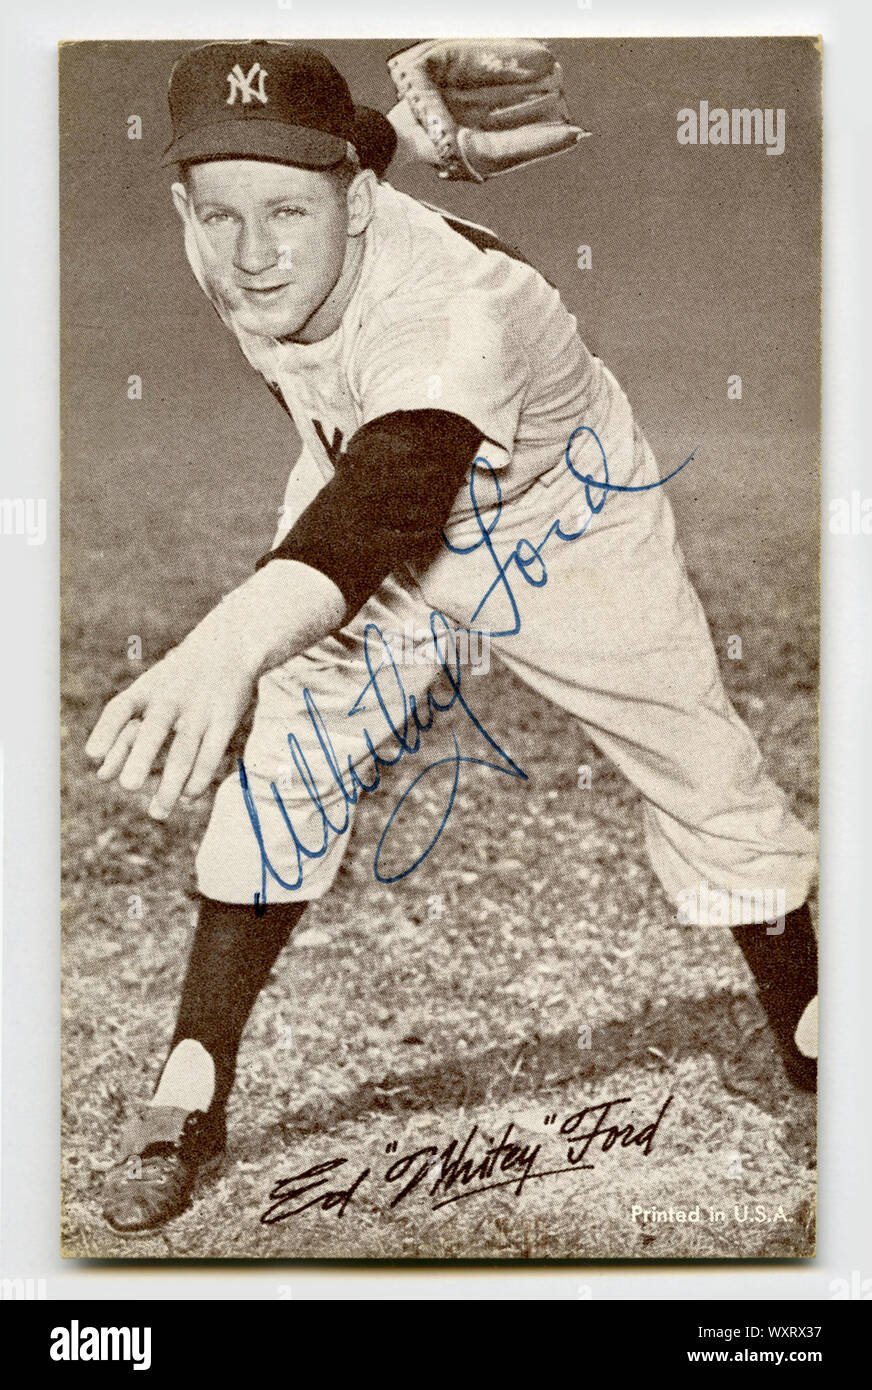 Firmato degli anni cinquanta era scheda di baseball della Hall of Fame pitcher Whitey Ford con i New York Yankees di American League. Foto Stock